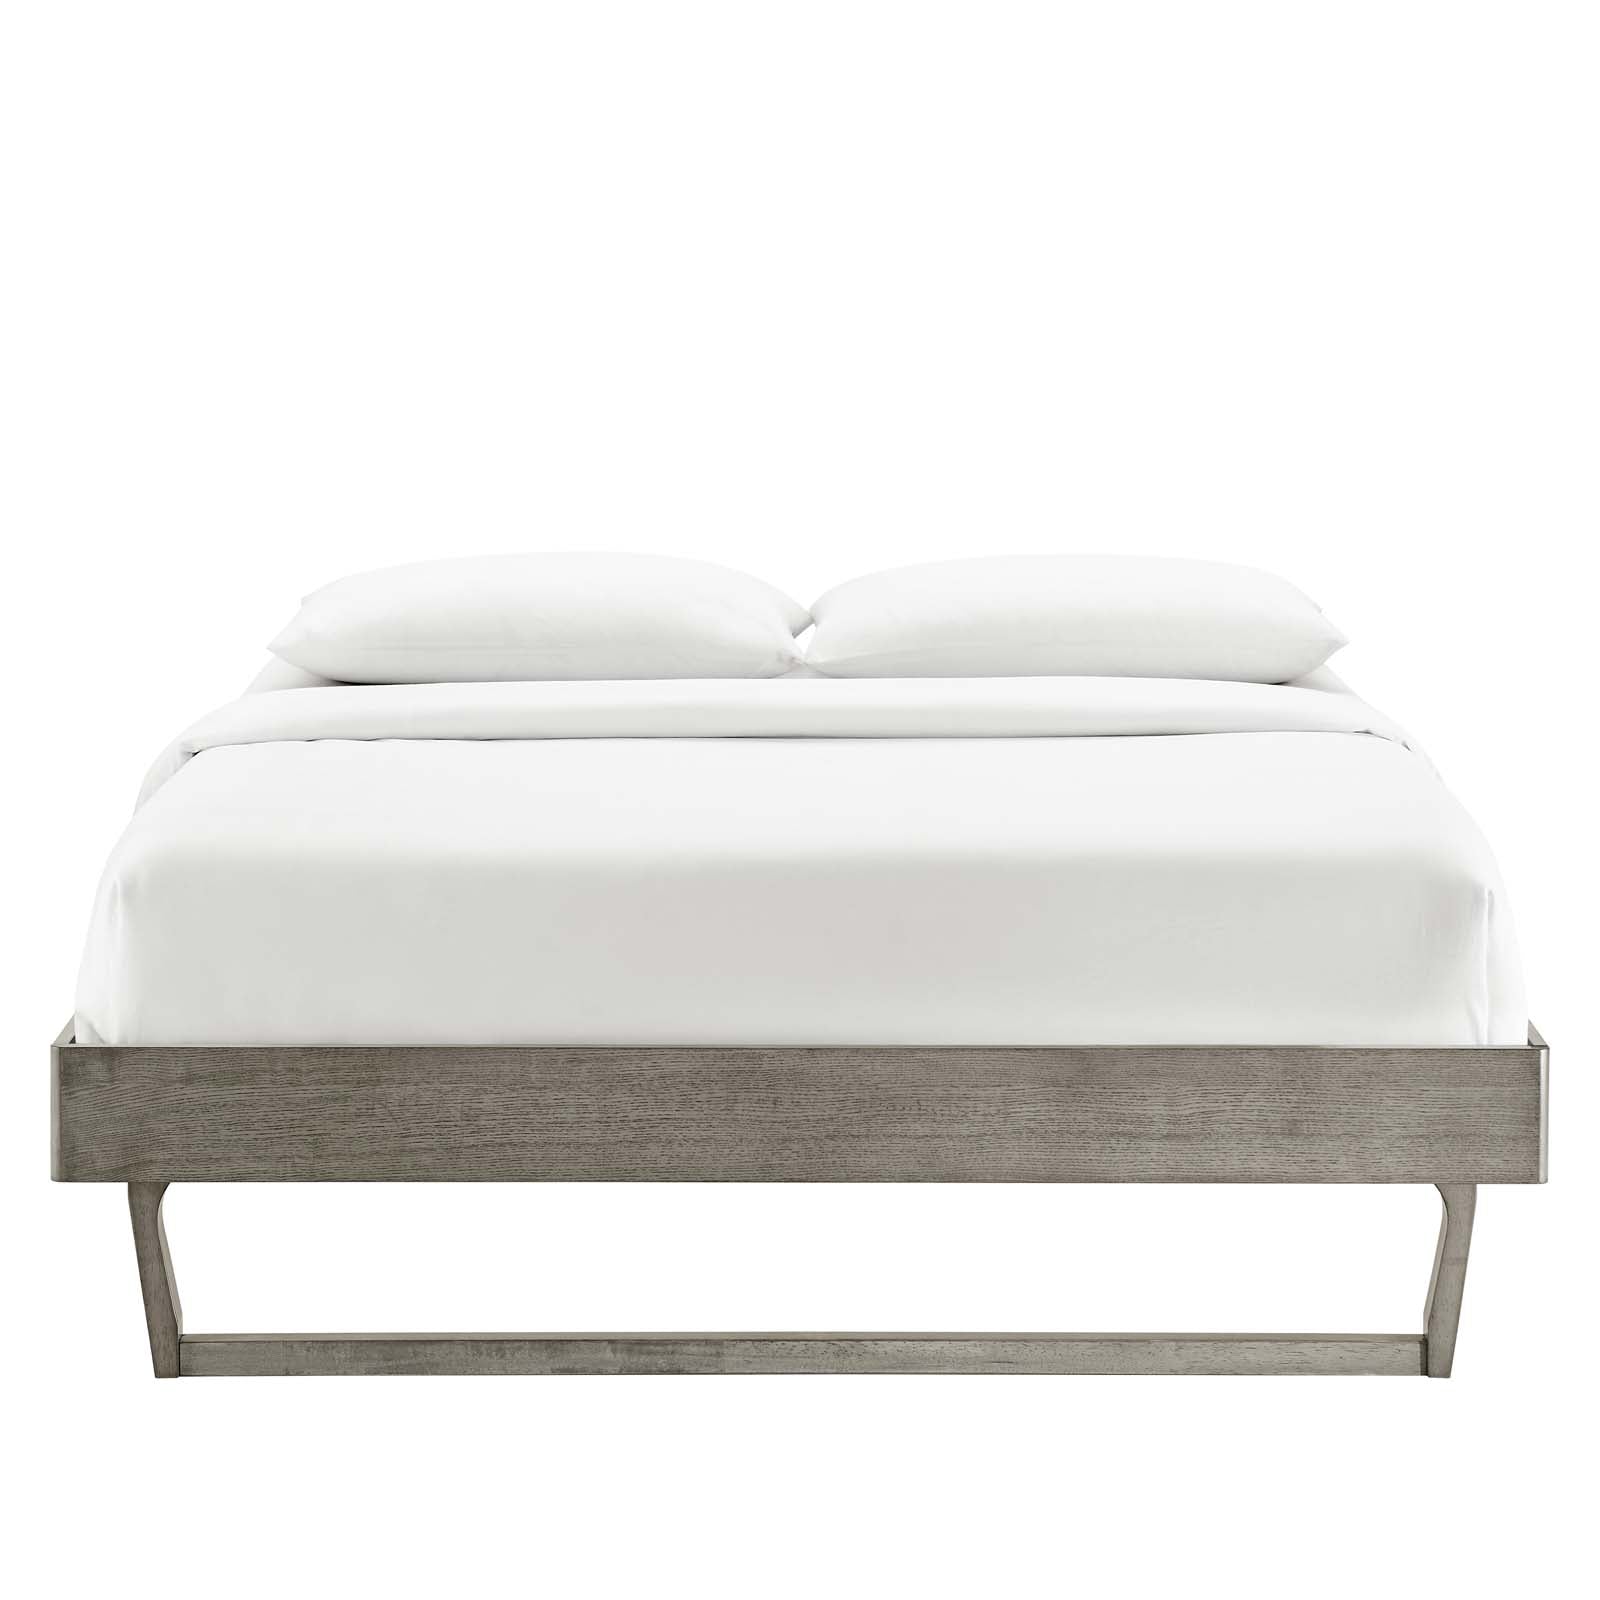 Modway Beds - Billie Full Wood Platform Bed Frame Gray